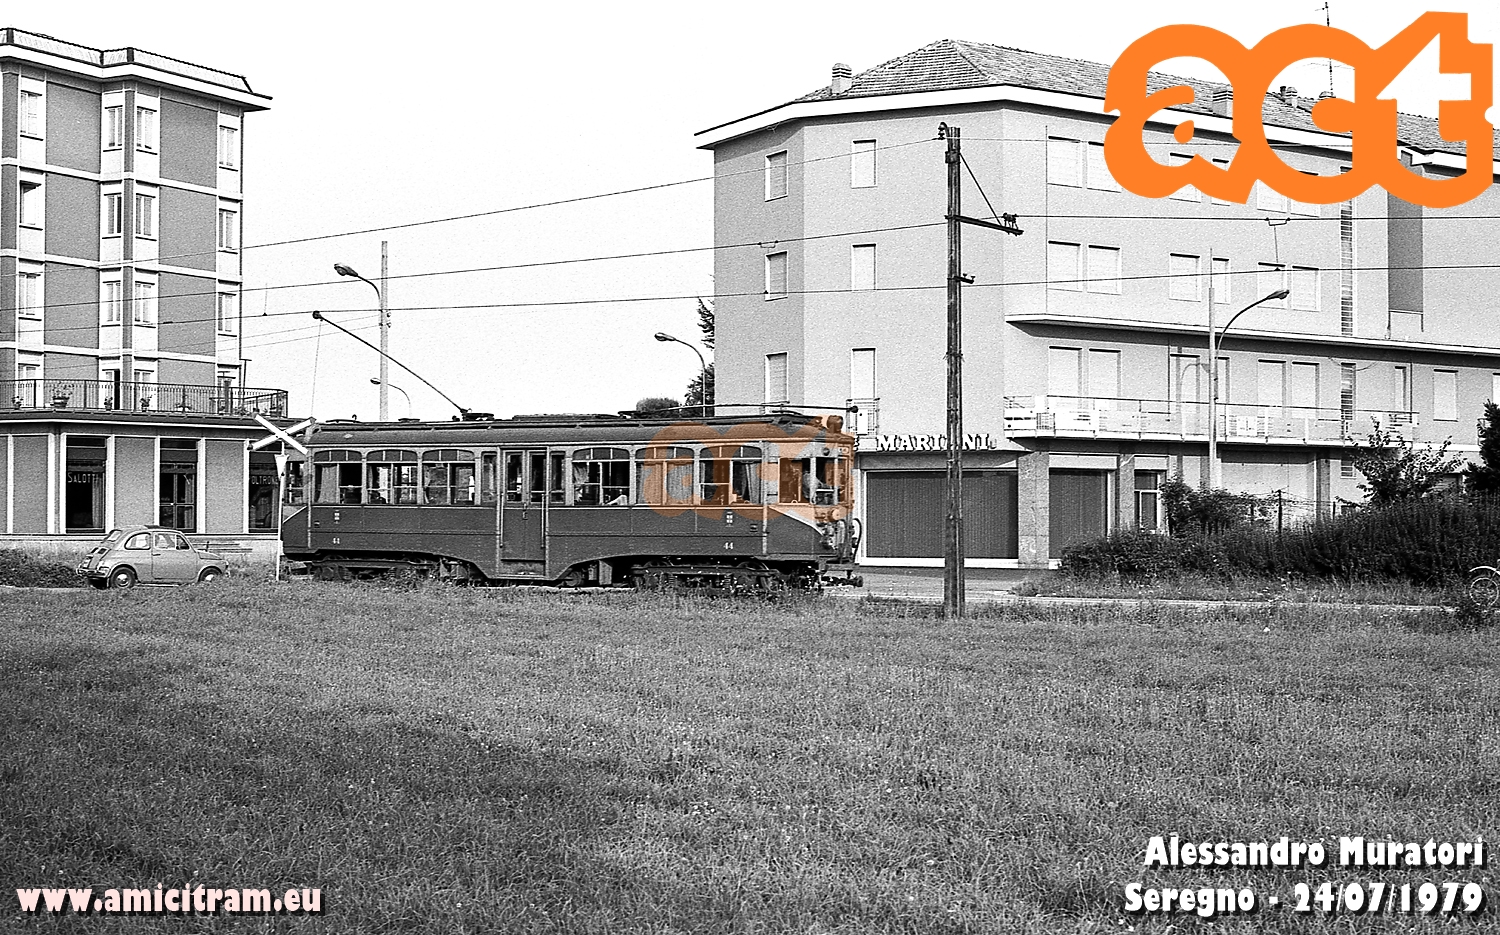 44 ATM Carate-Milano in transito per Seregno. 24 luglio 1979 Foto Alessandro Muratori